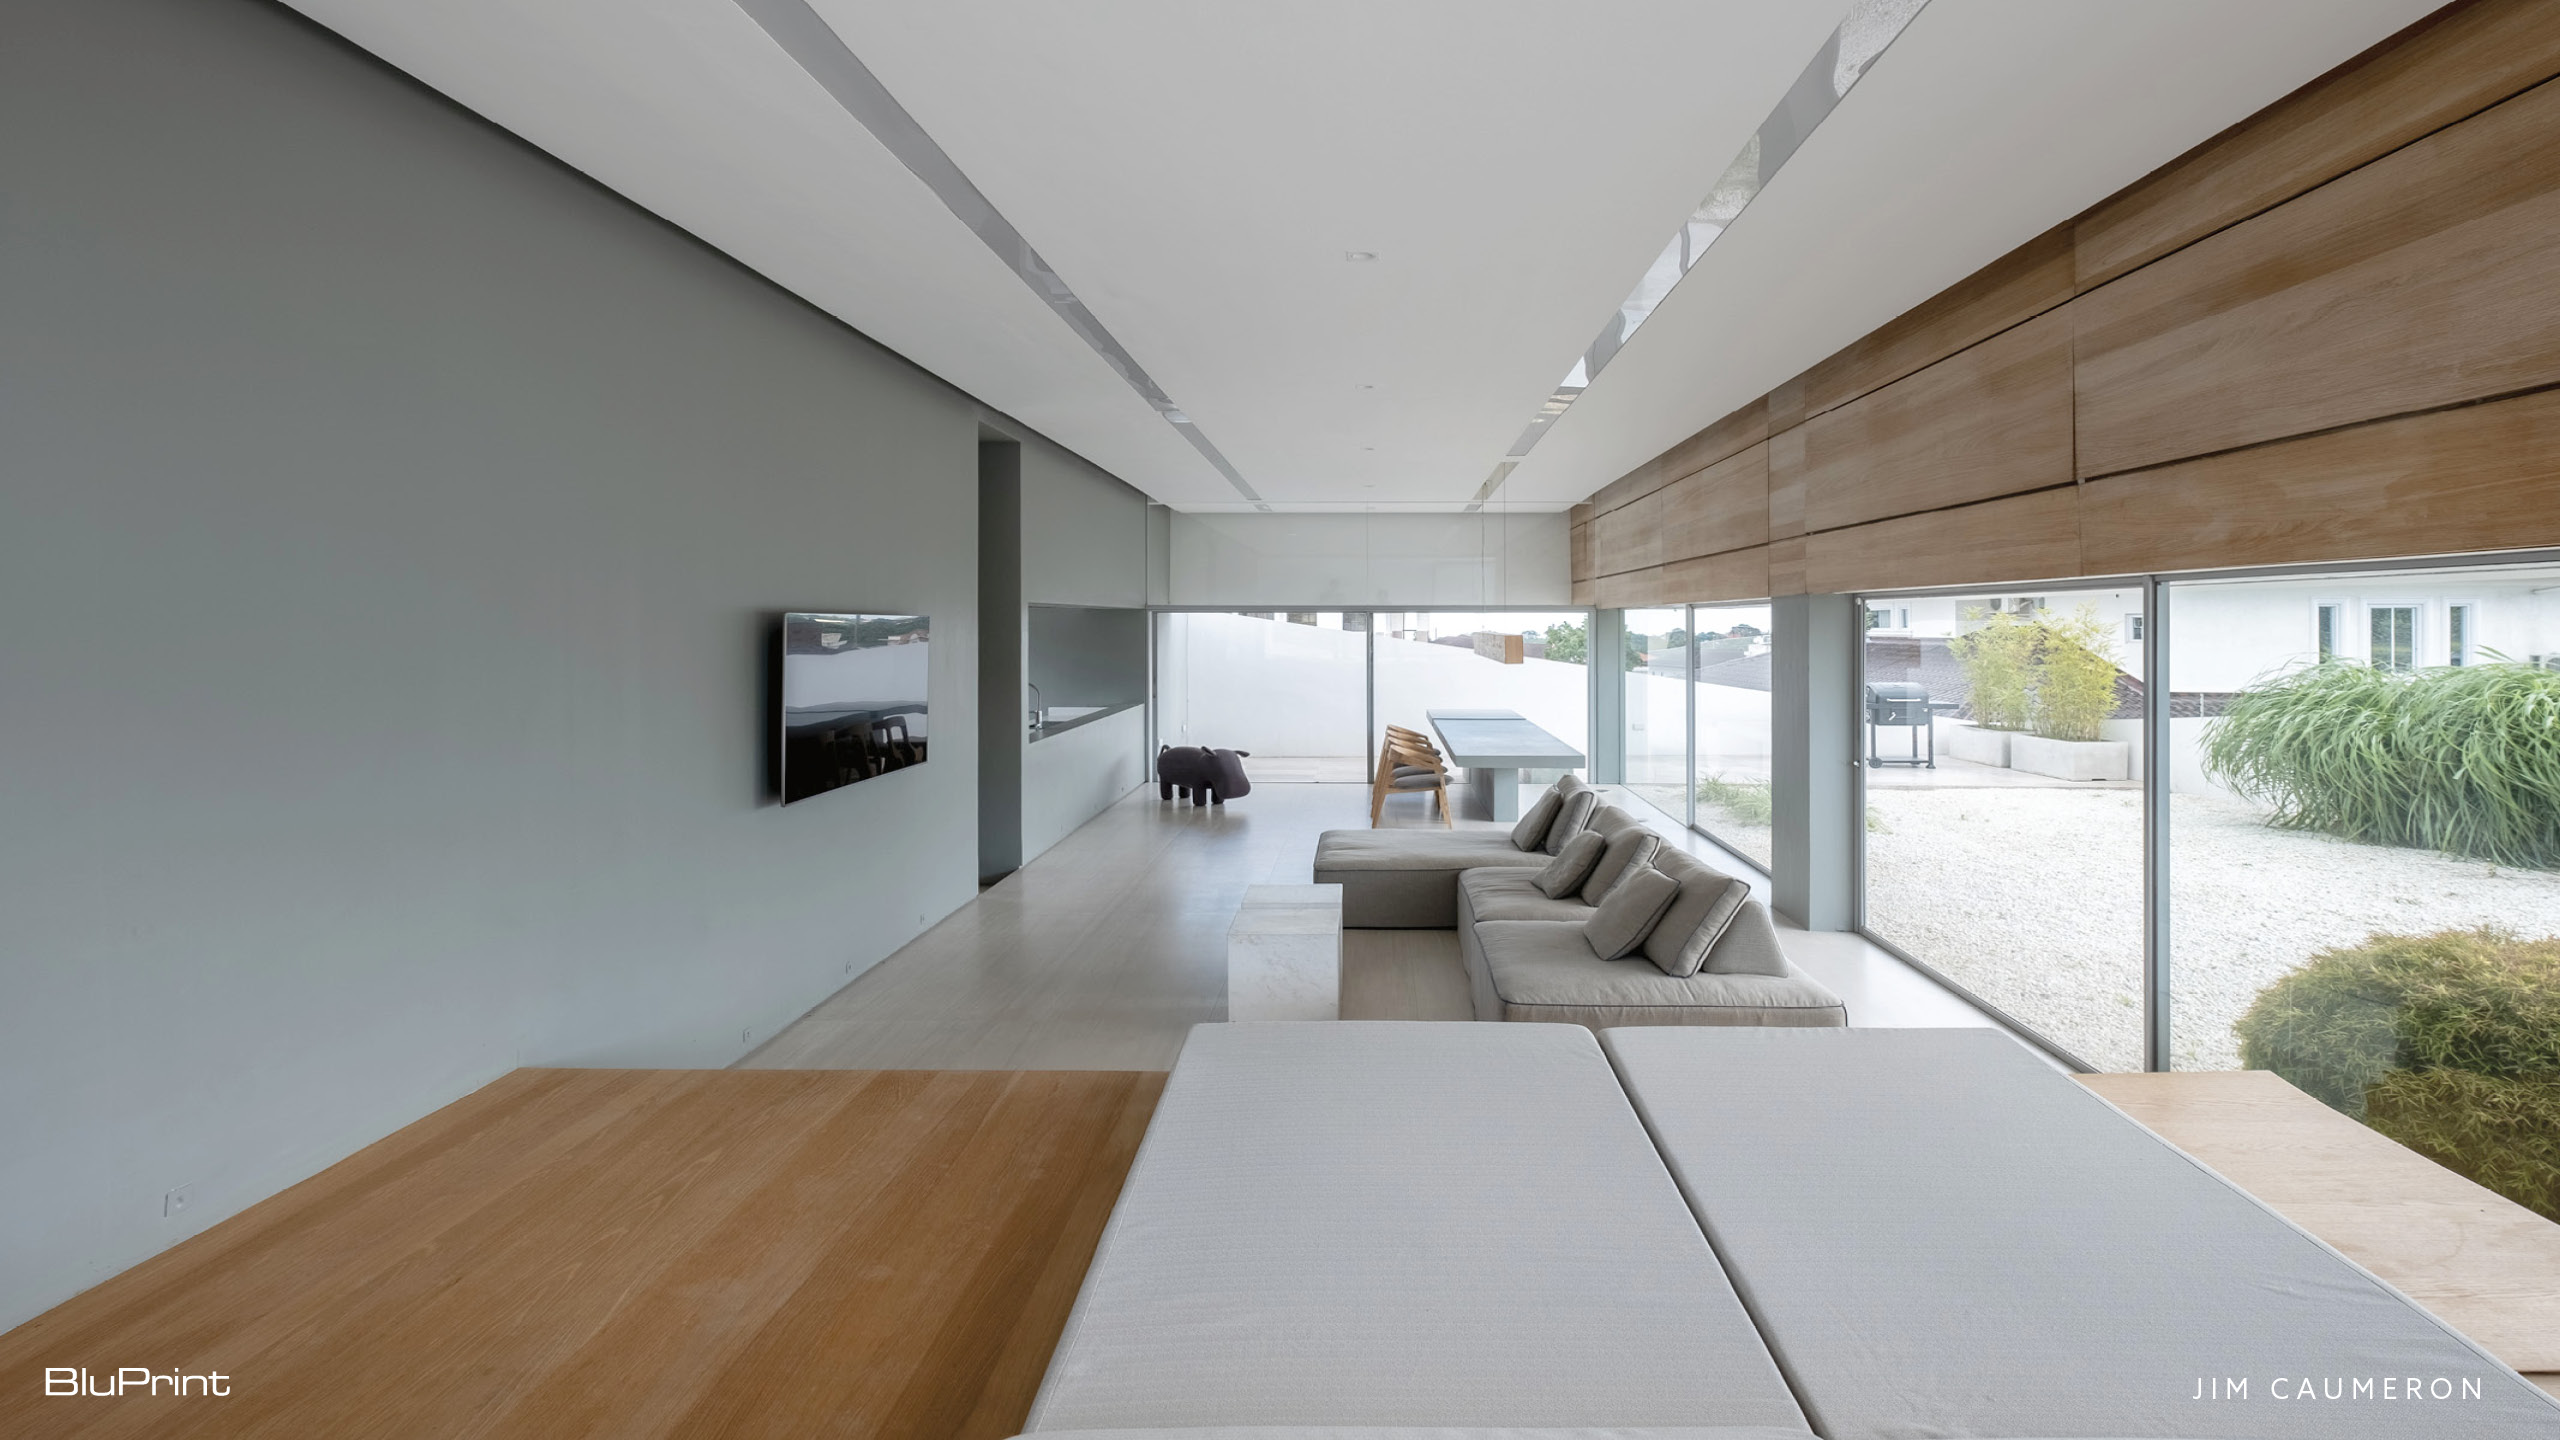 Panorama House Interior by Jim Caumeron minimalism